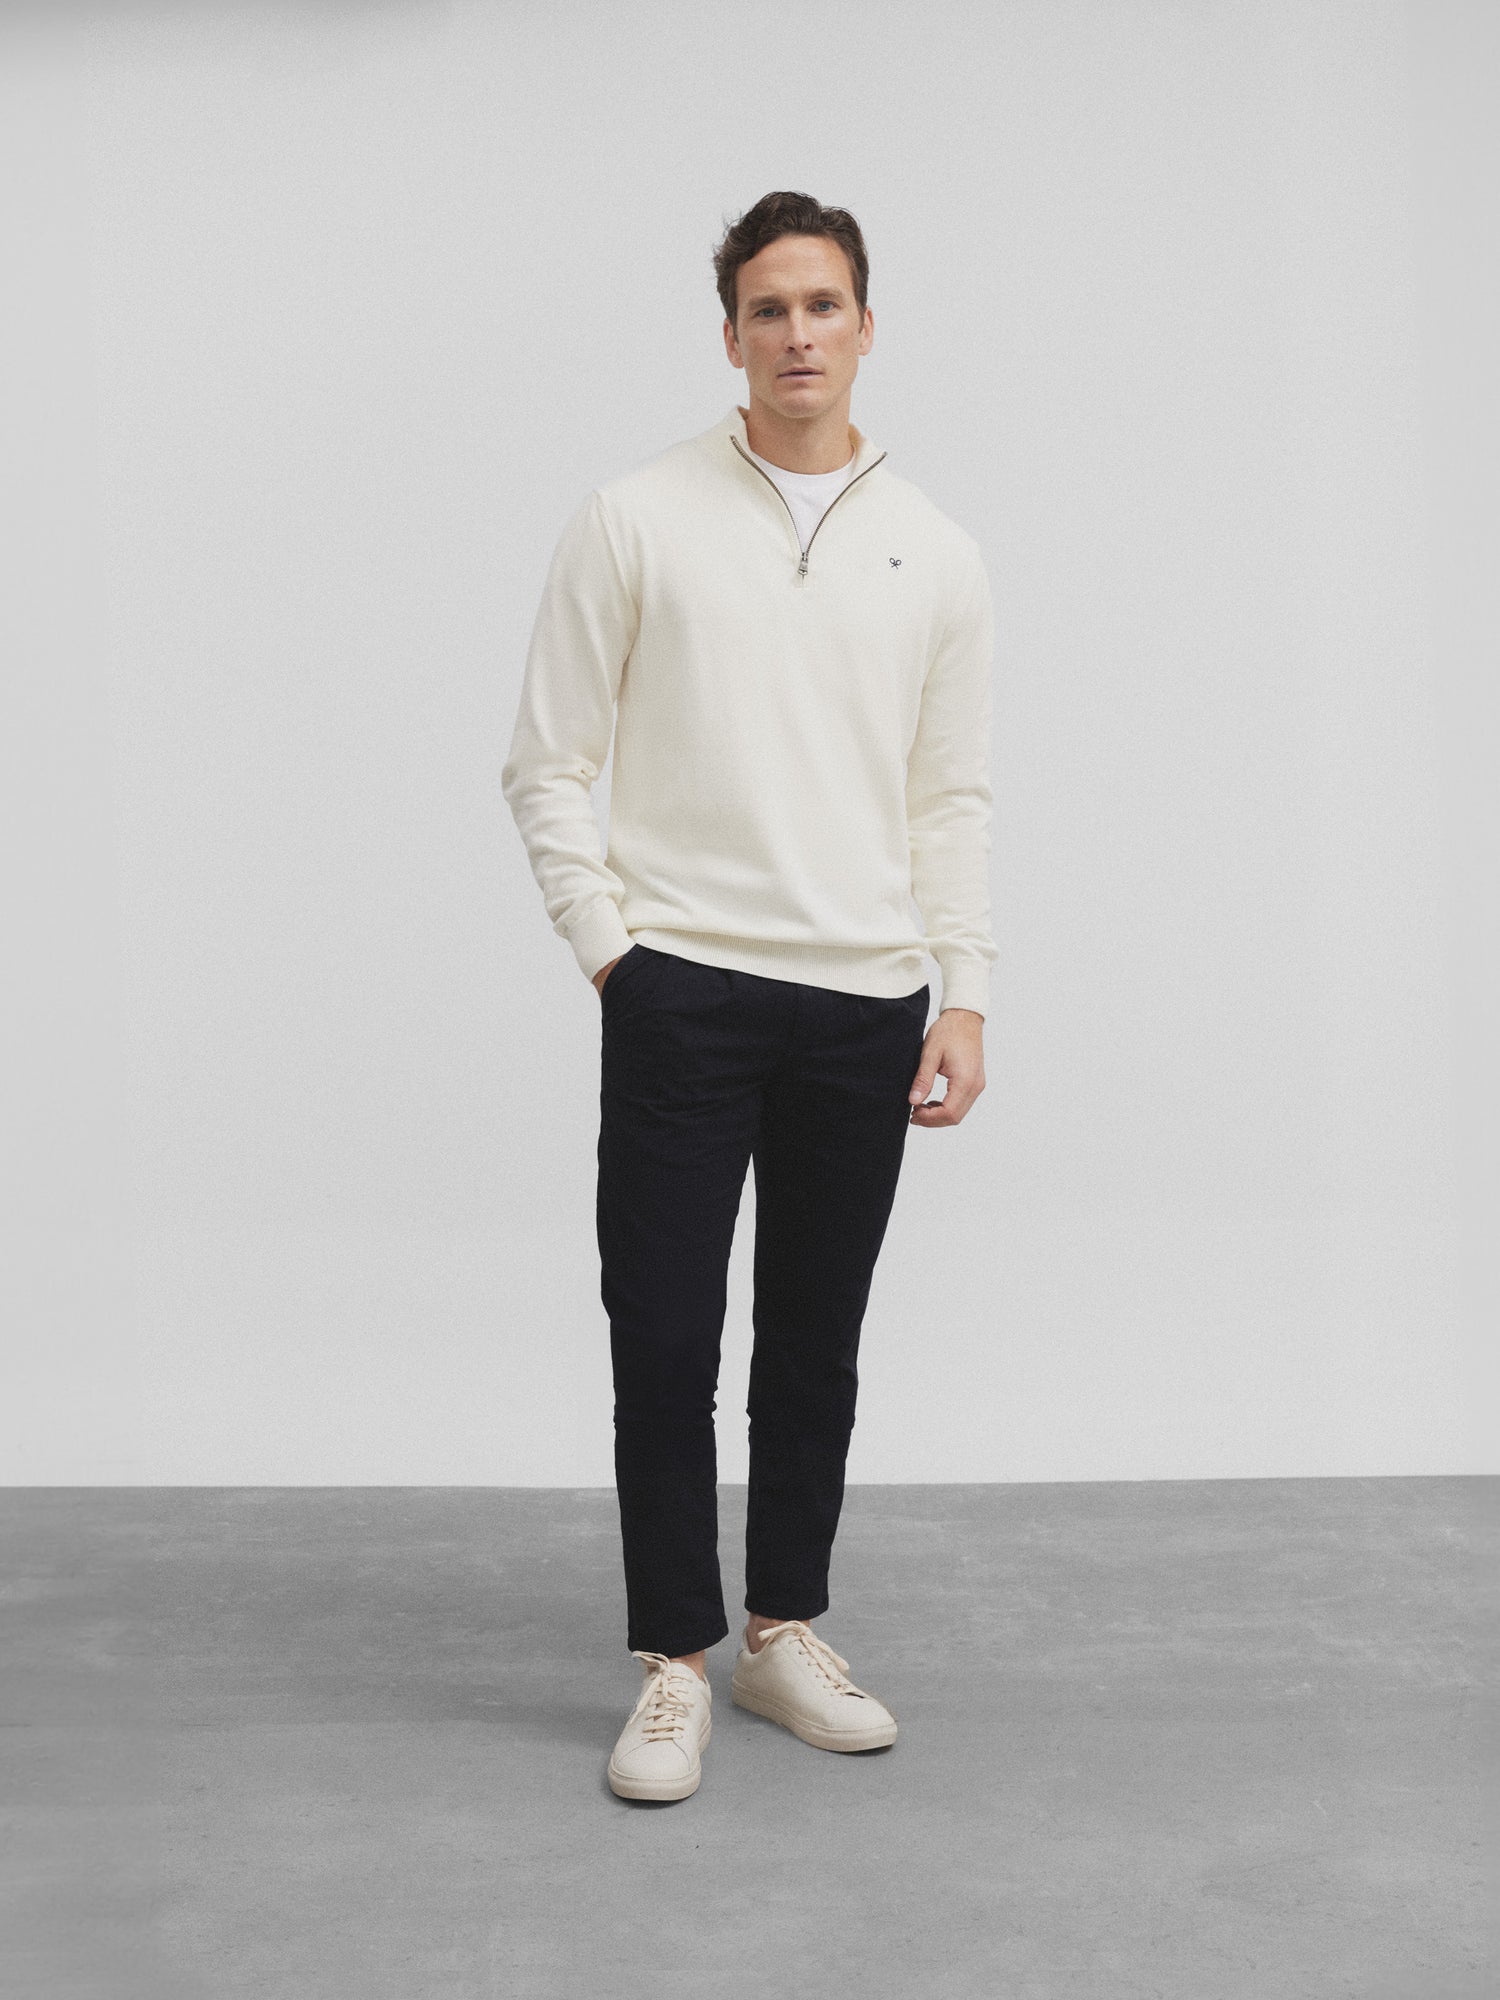 Light beige half-zip sweater